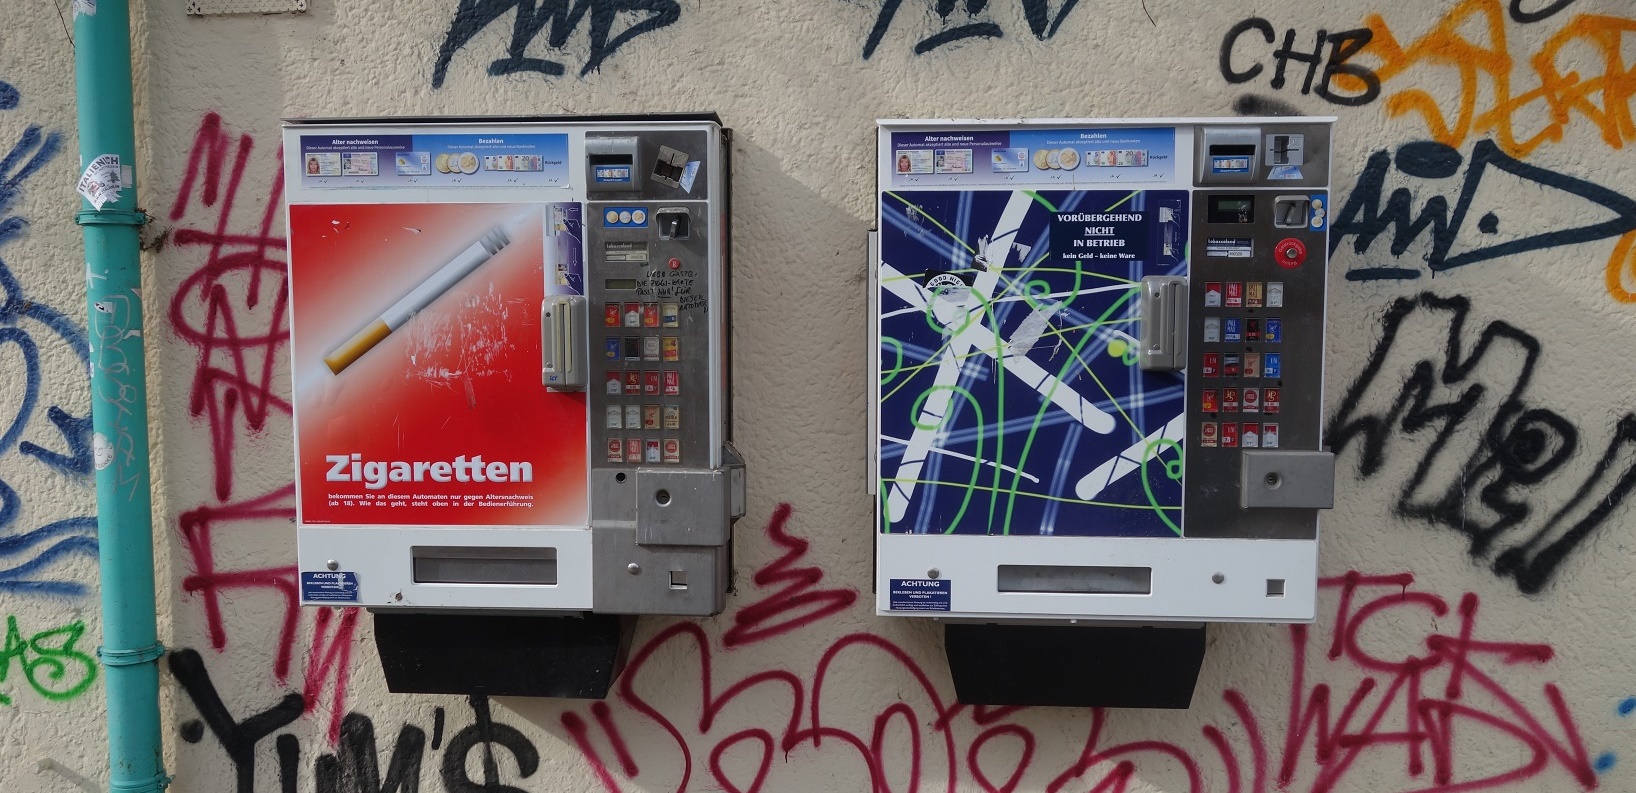 Warnhinweise auf Zigarettenautomaten Baden-Württemberg schlägt industriefreundliche Lösung vor